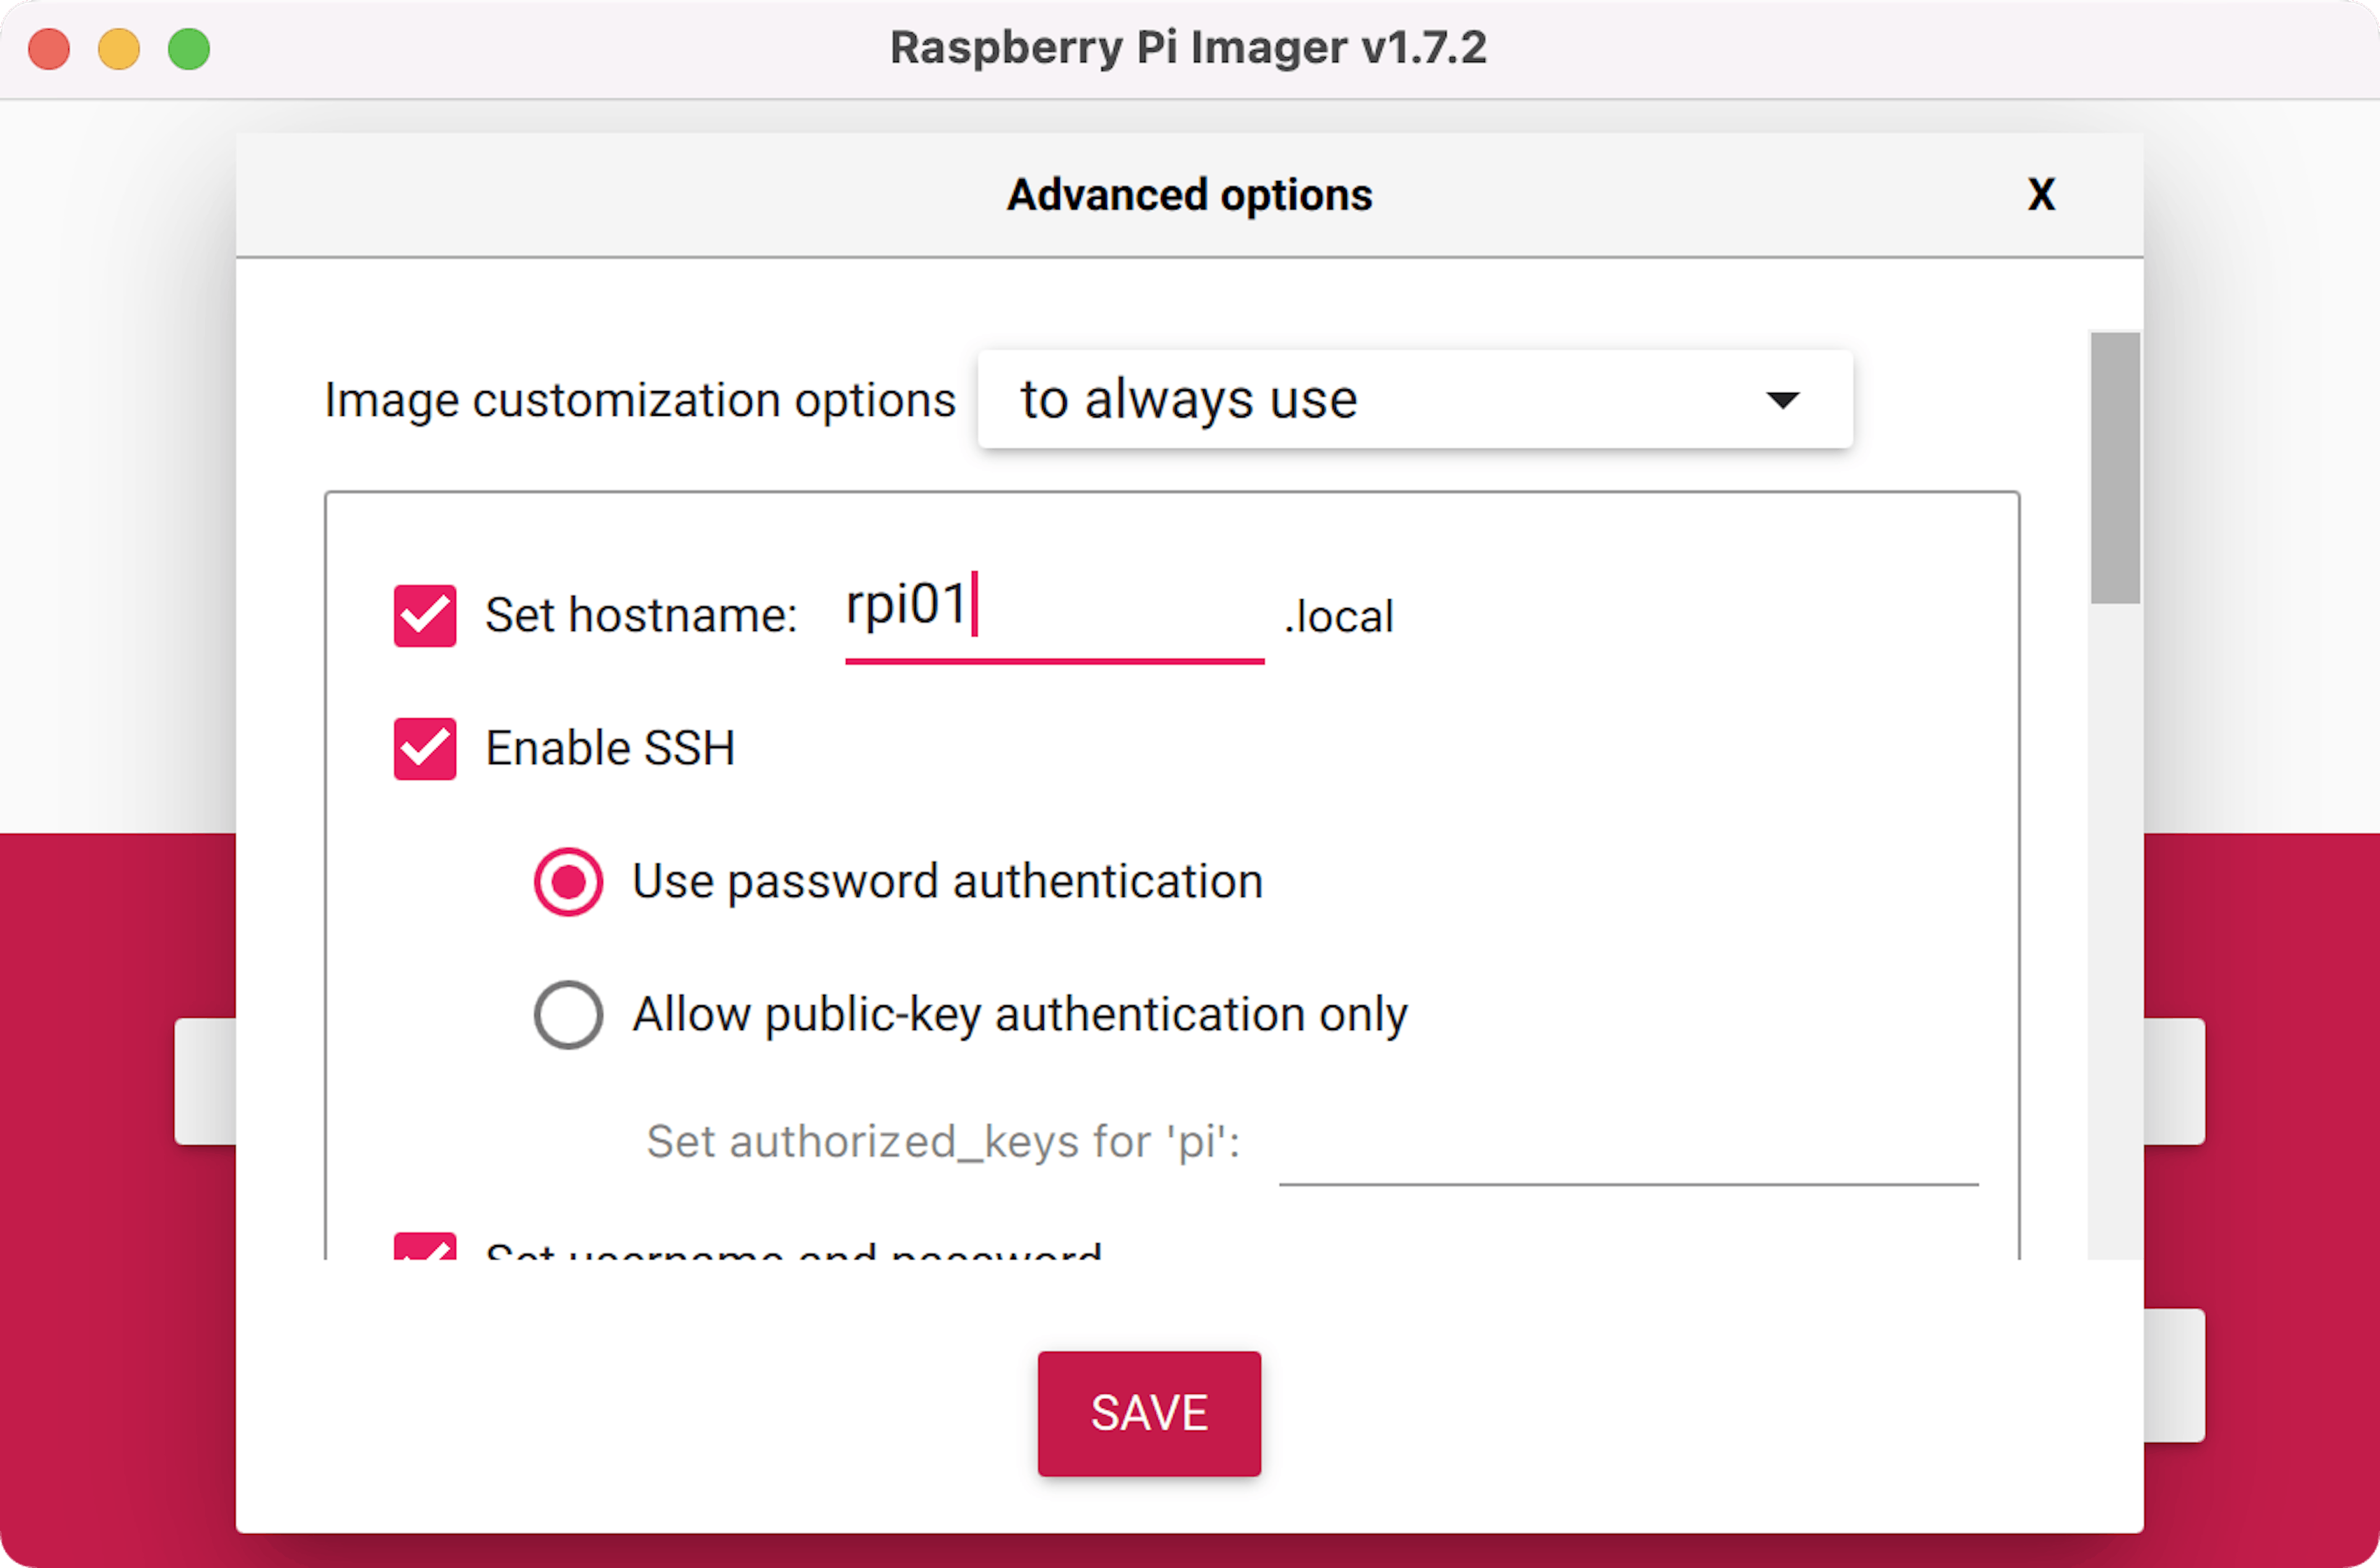 Options avancées de l'imageur Raspberry Pi